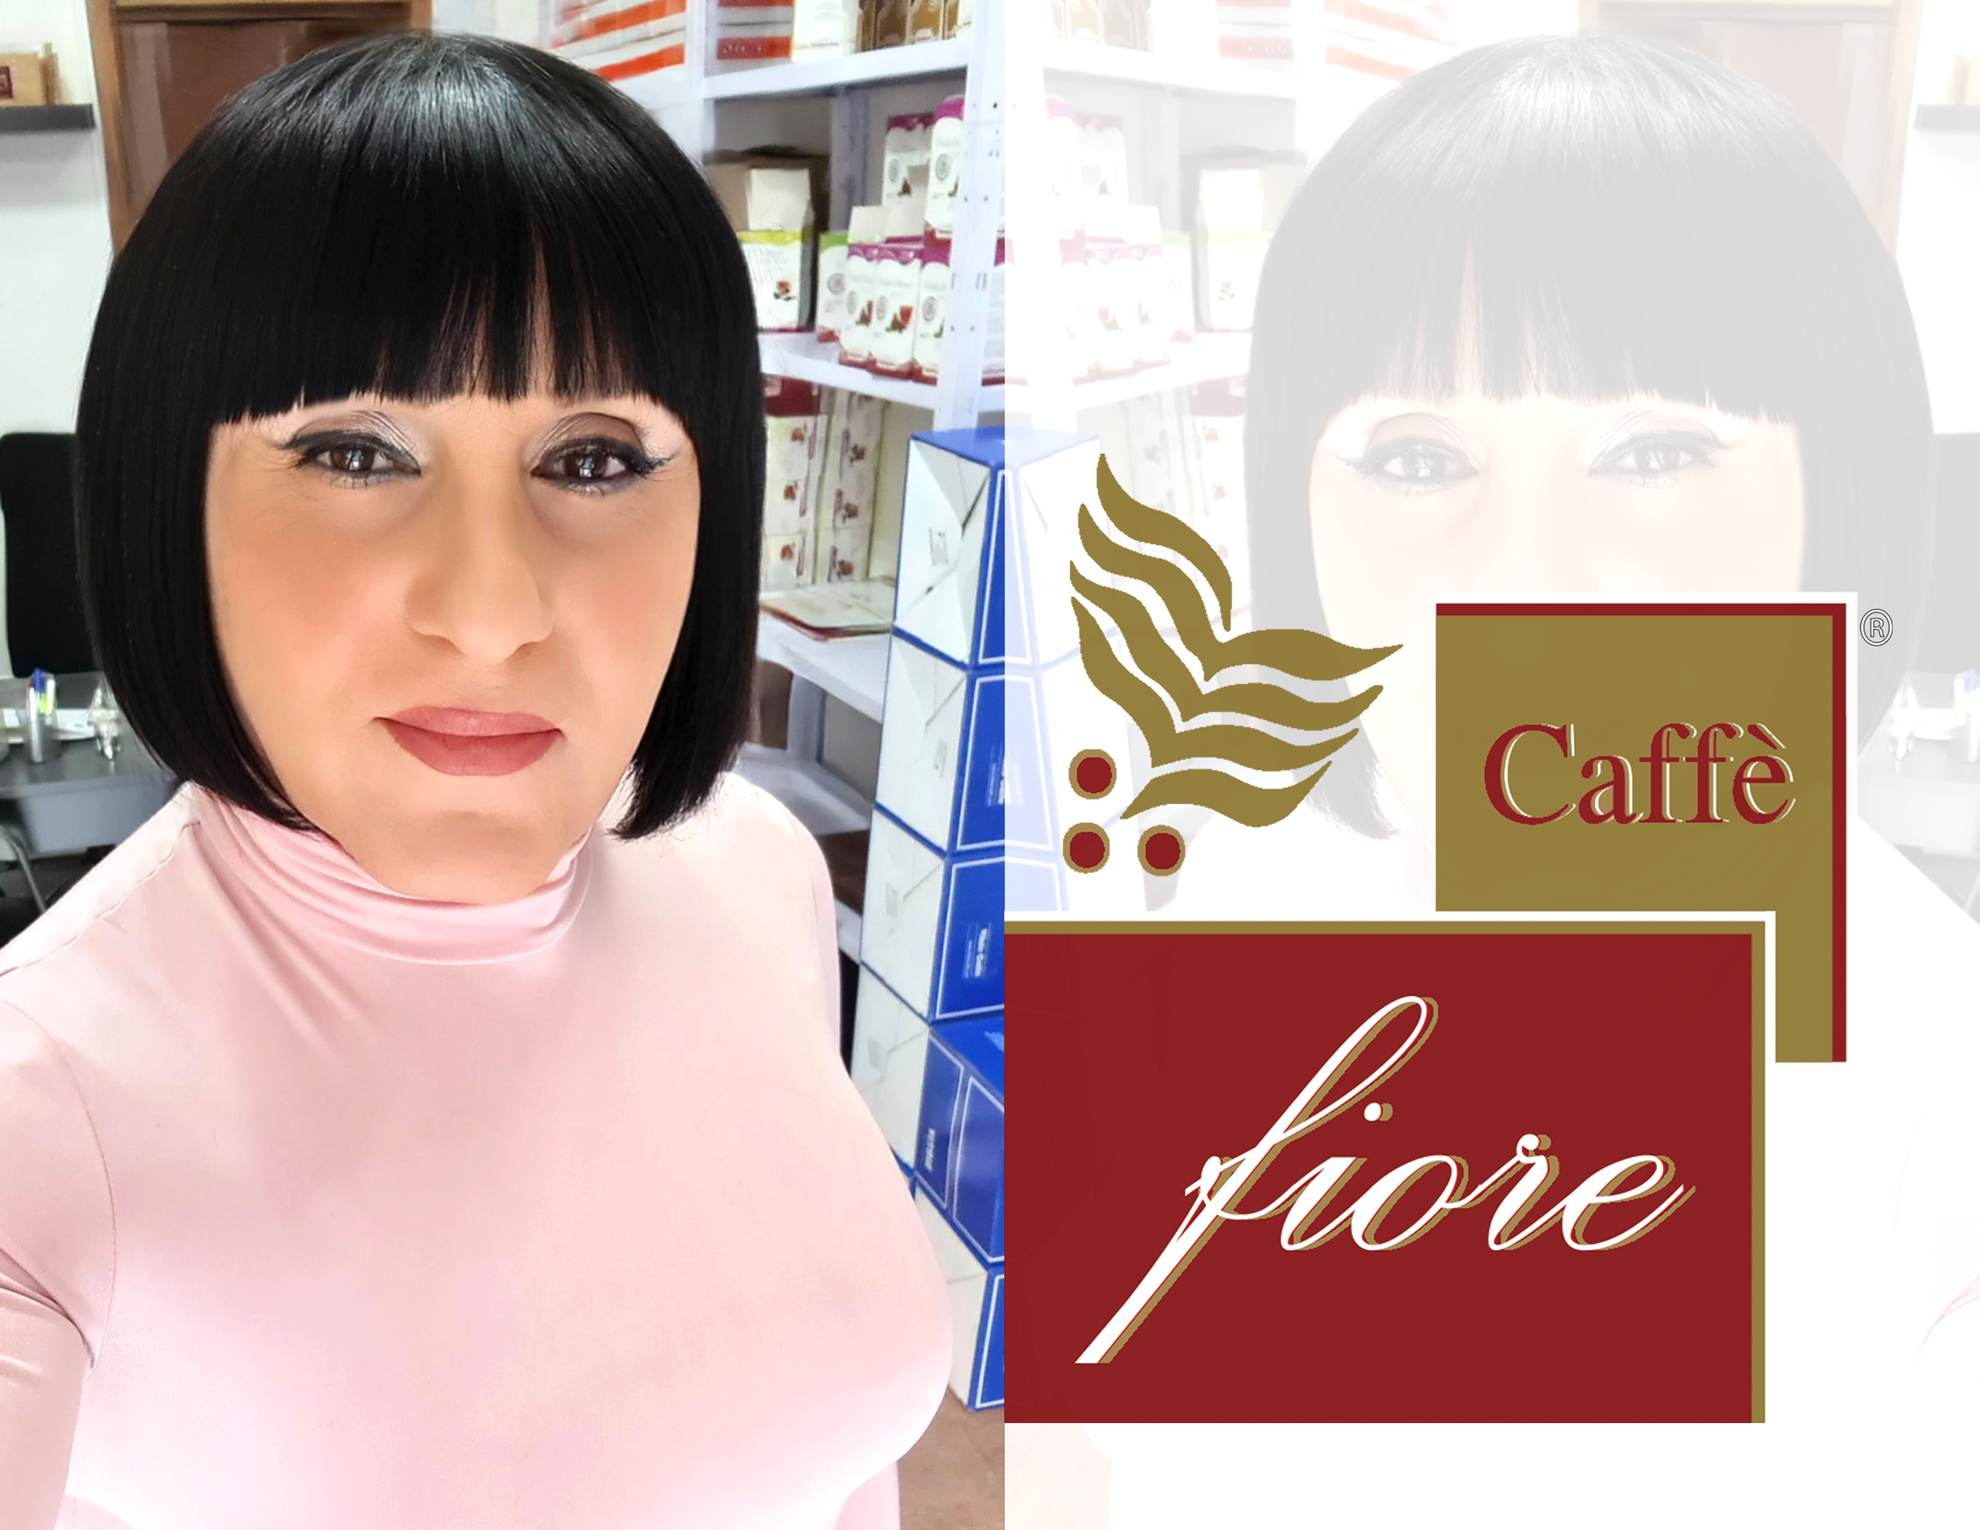 695-caffe-fiore-promo-20230602